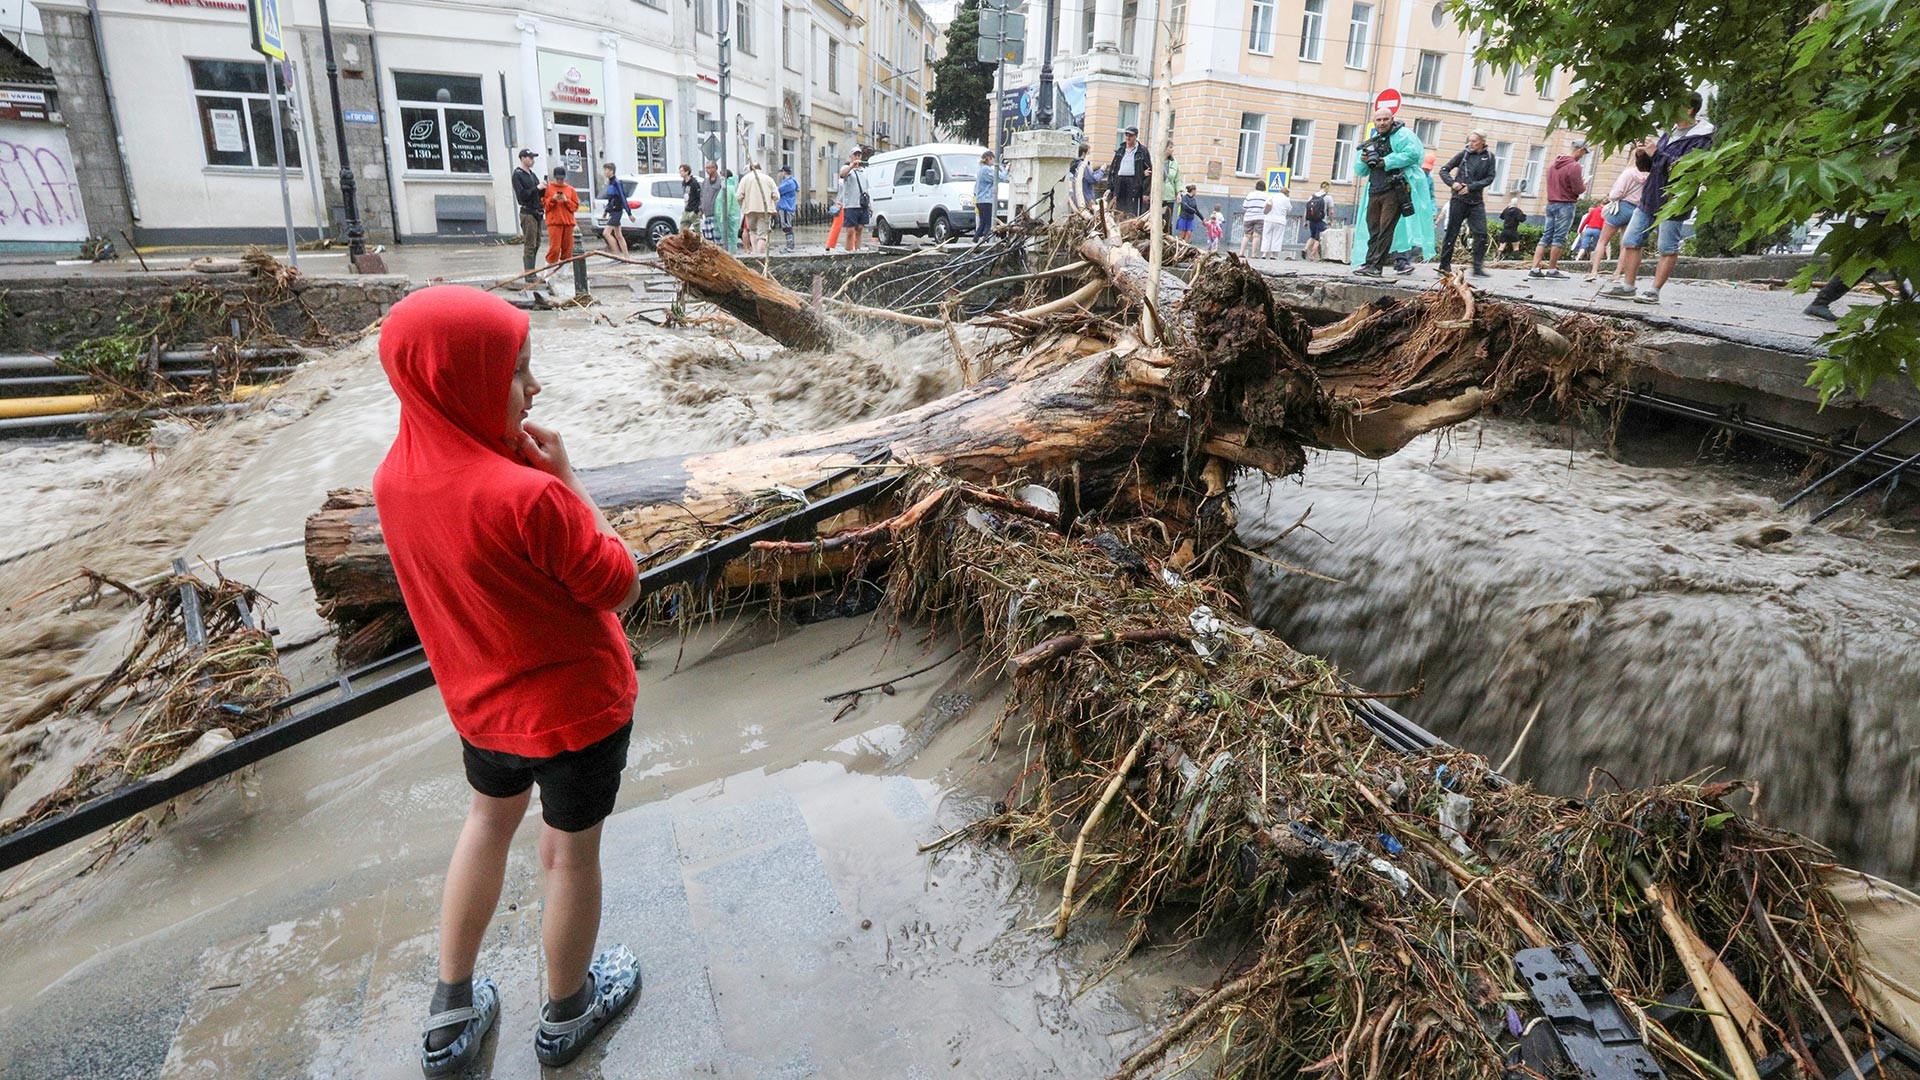 Људи на улици после поплаве након обилних падавина у Јалти.